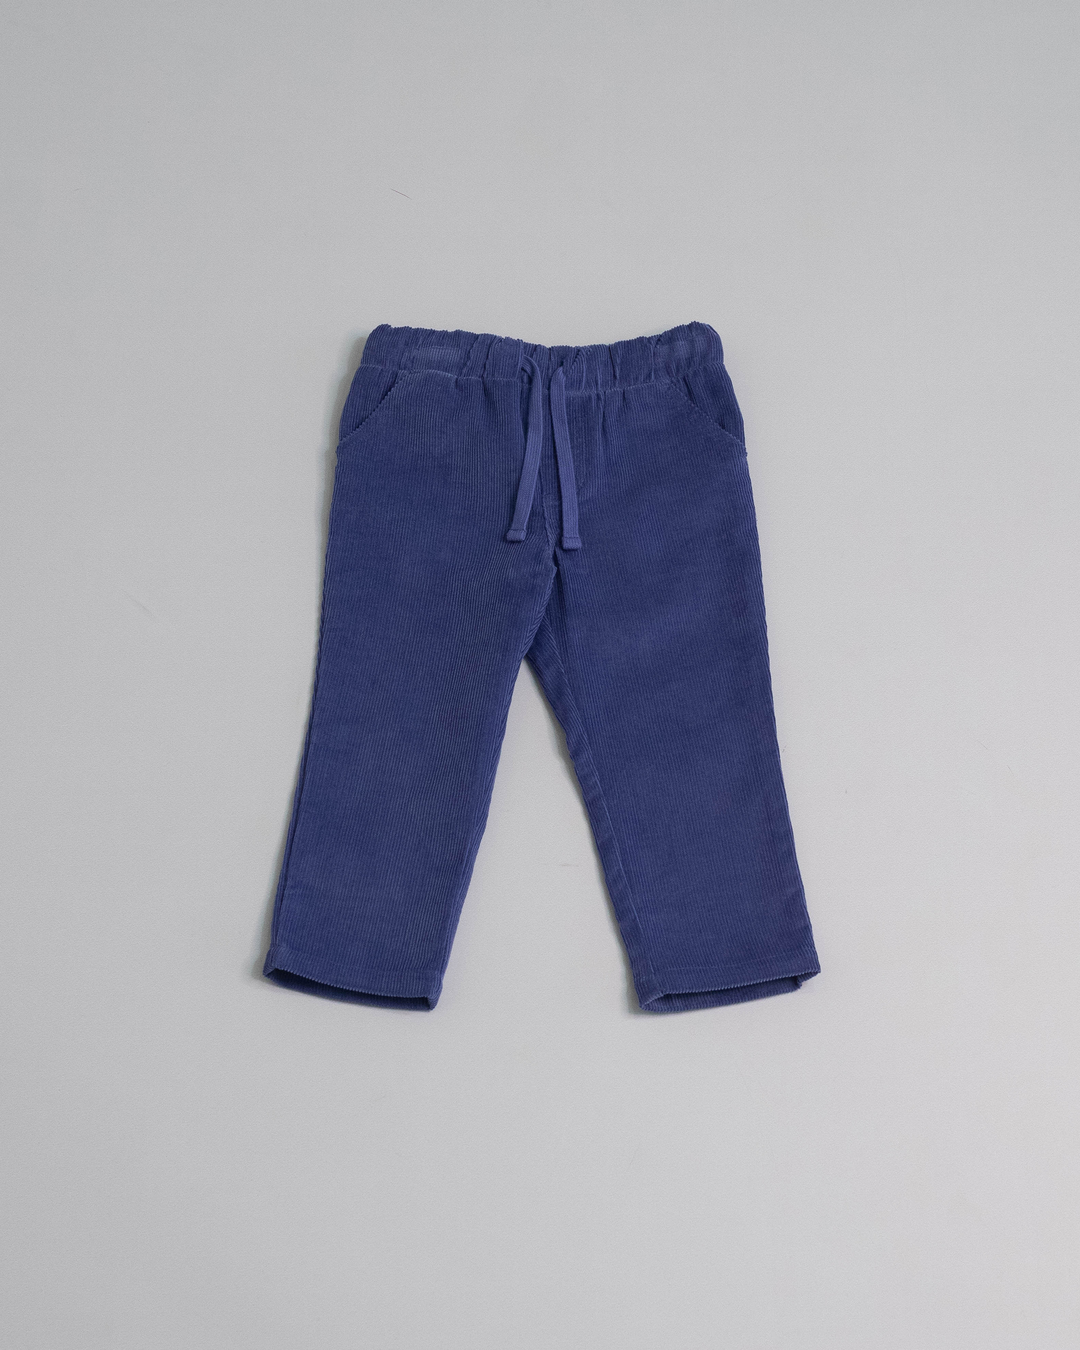 Pantalón azul oscuro de corduroy con ajustador